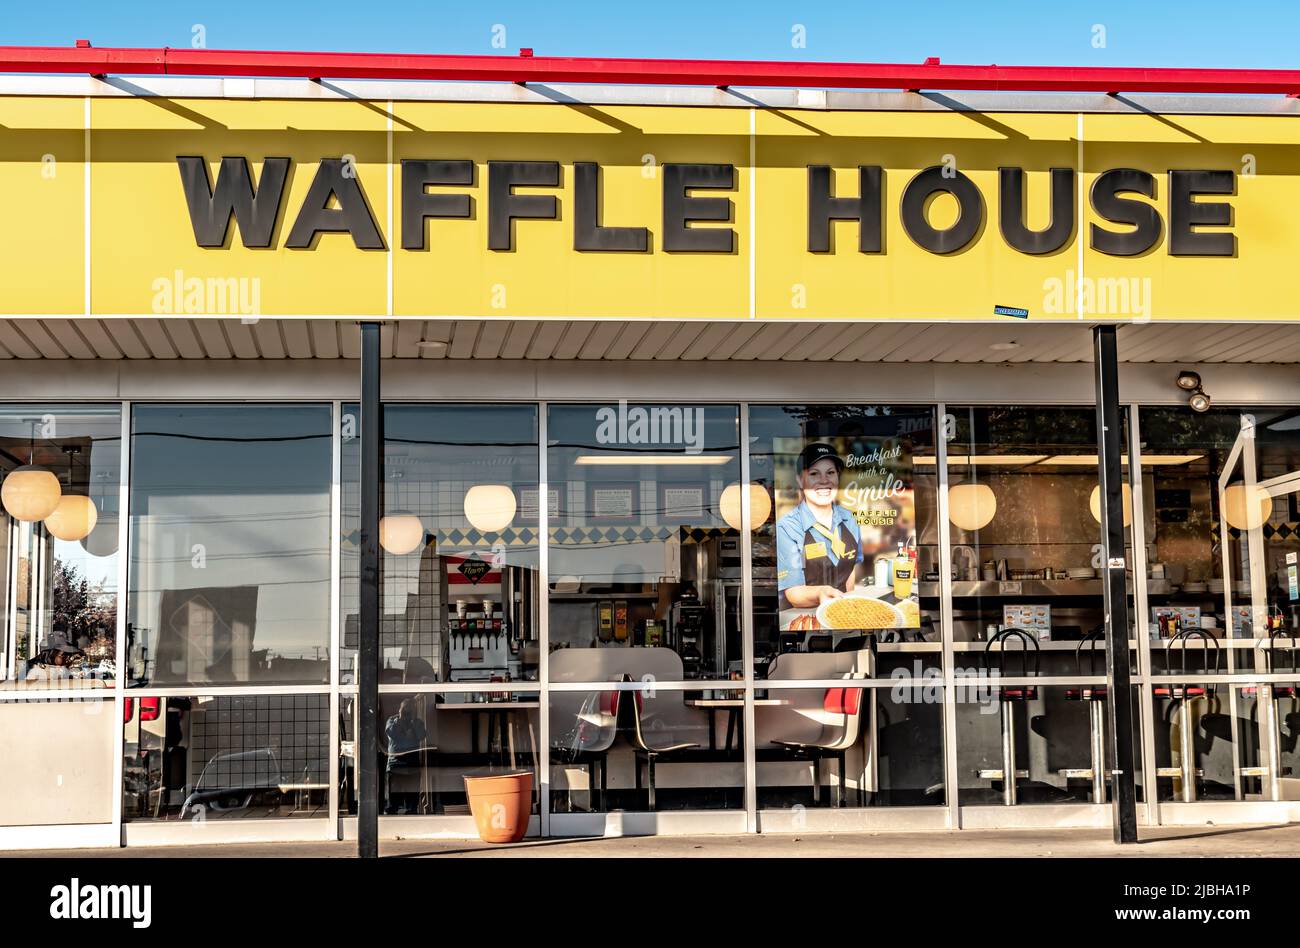 Charlotte, NC/USA - 9 novembre 2019: Scatto orizzontale medio della facciata del negozio 'waffle House' ristorante per la colazione che mostra il marchio in grassetto nero lettera Foto Stock